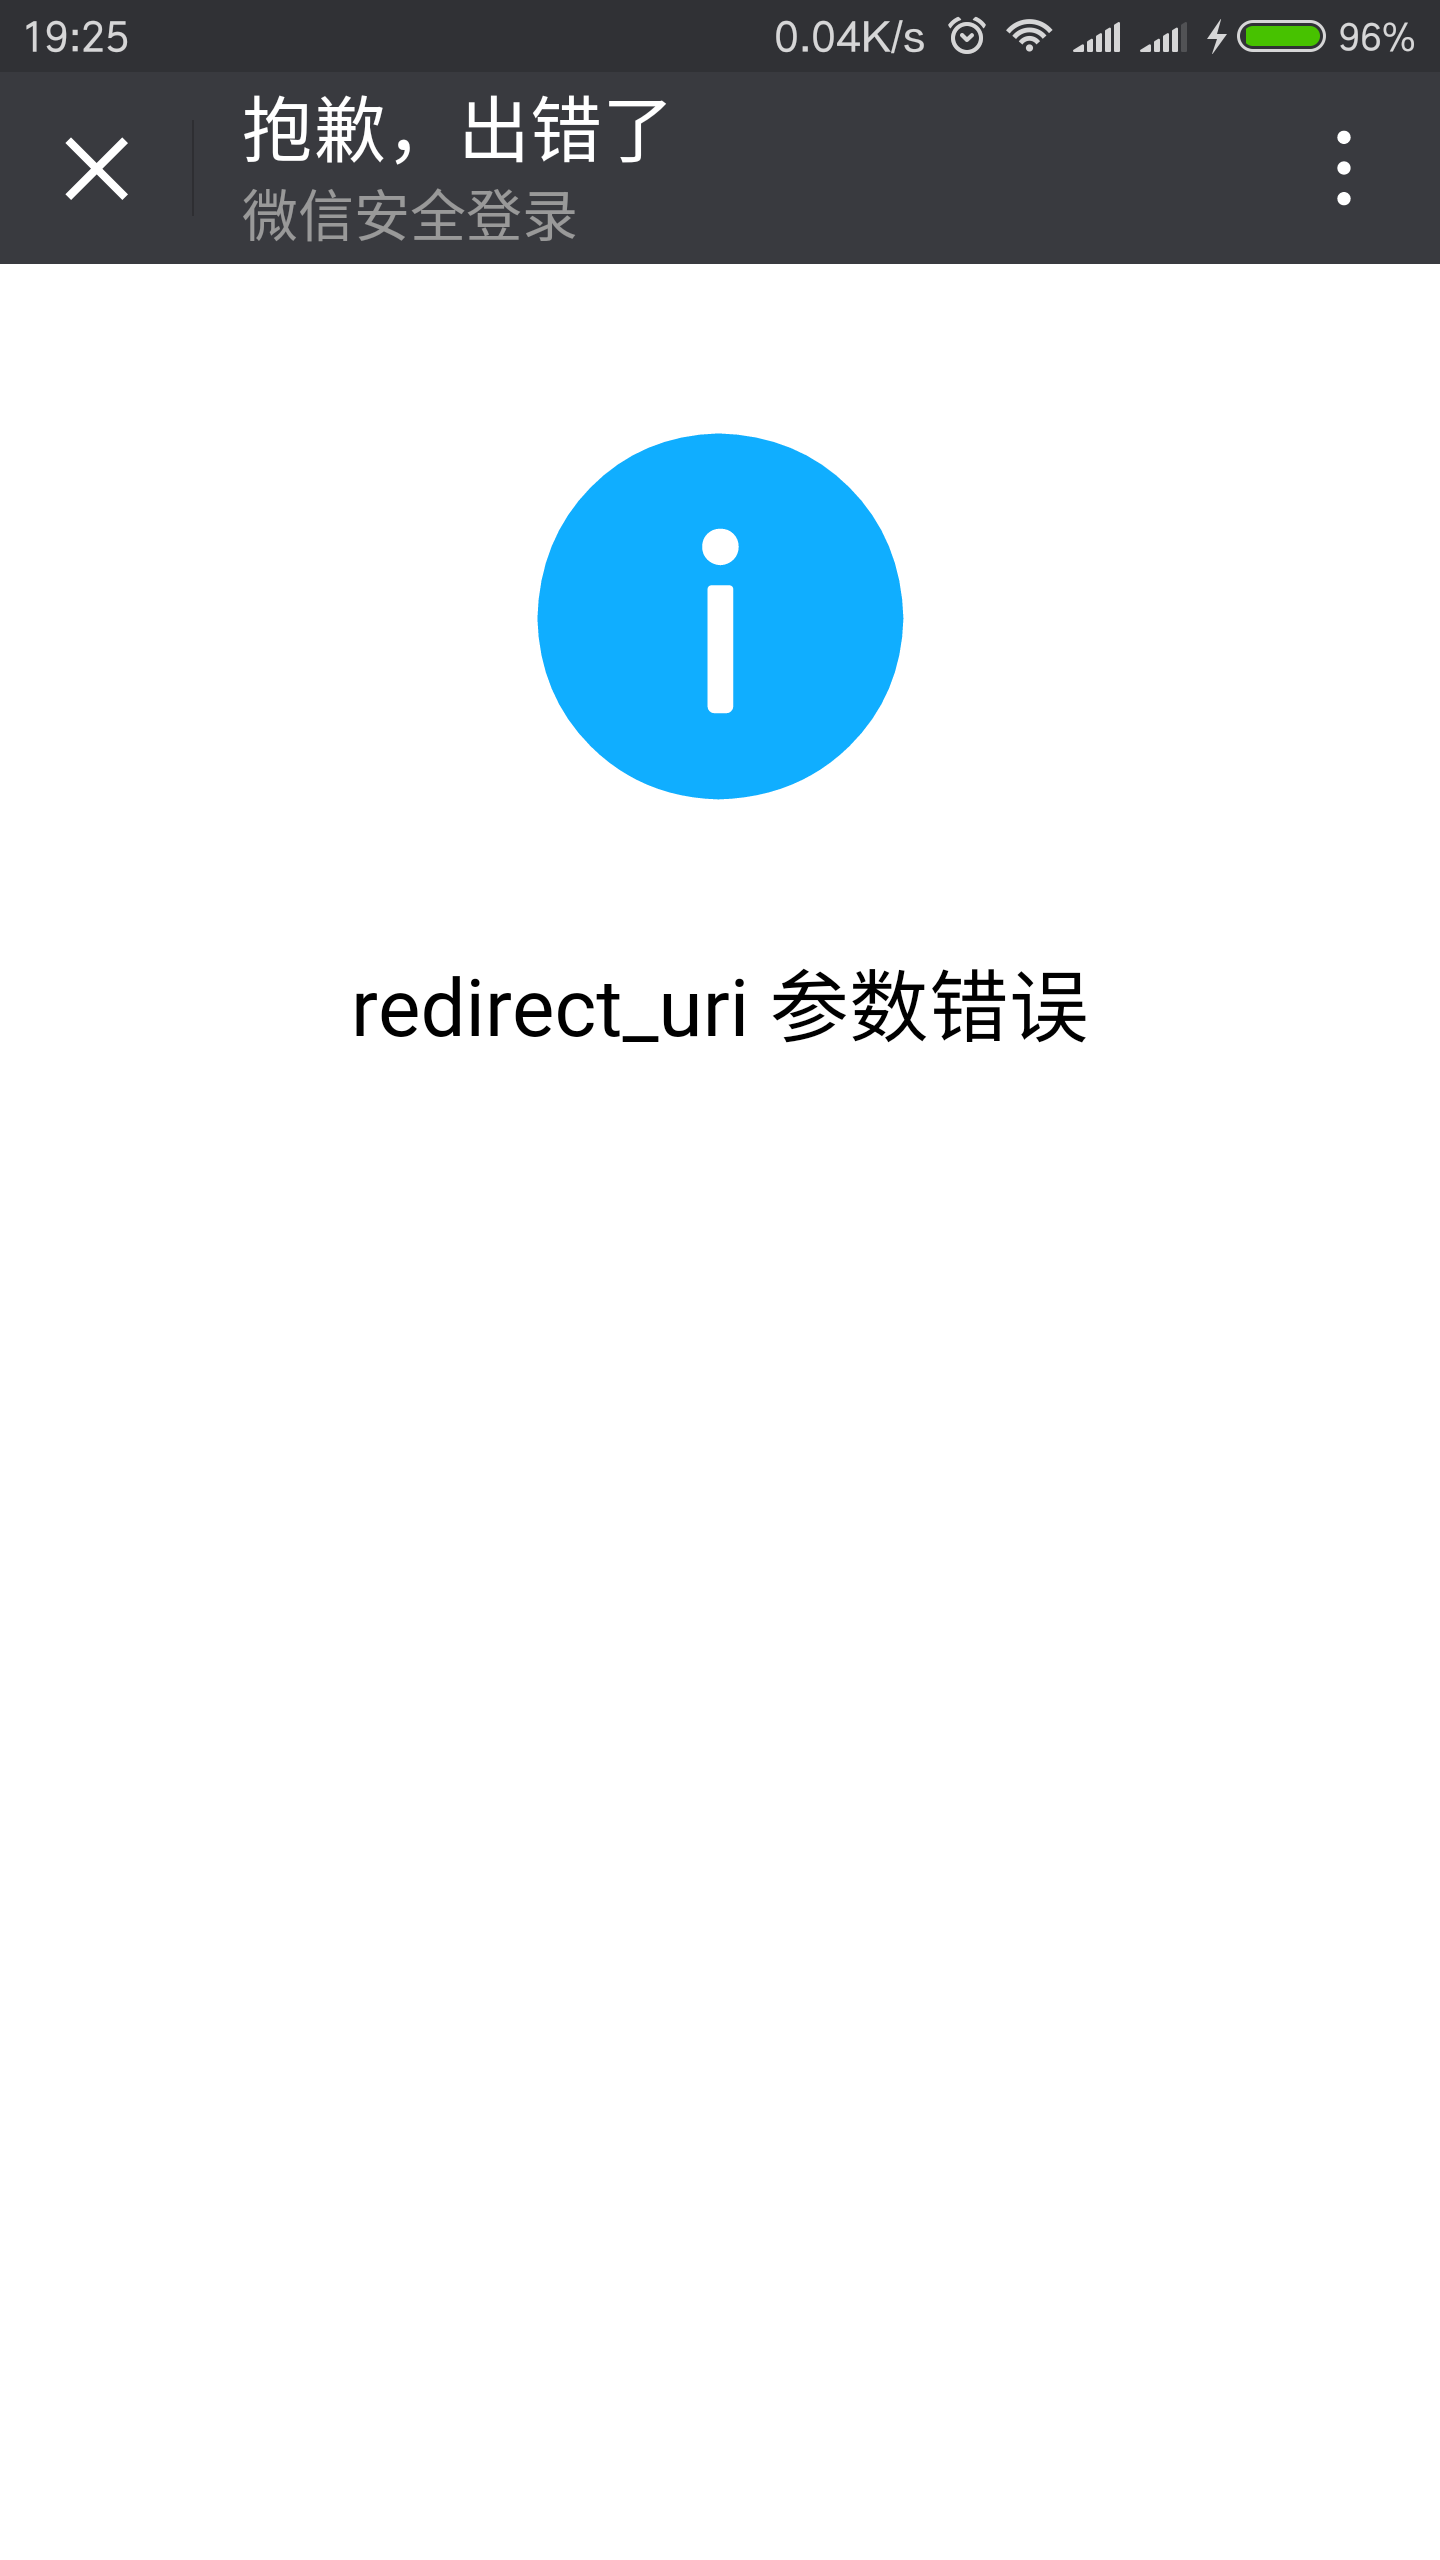 微信网页授权redirect_uri 参数错误